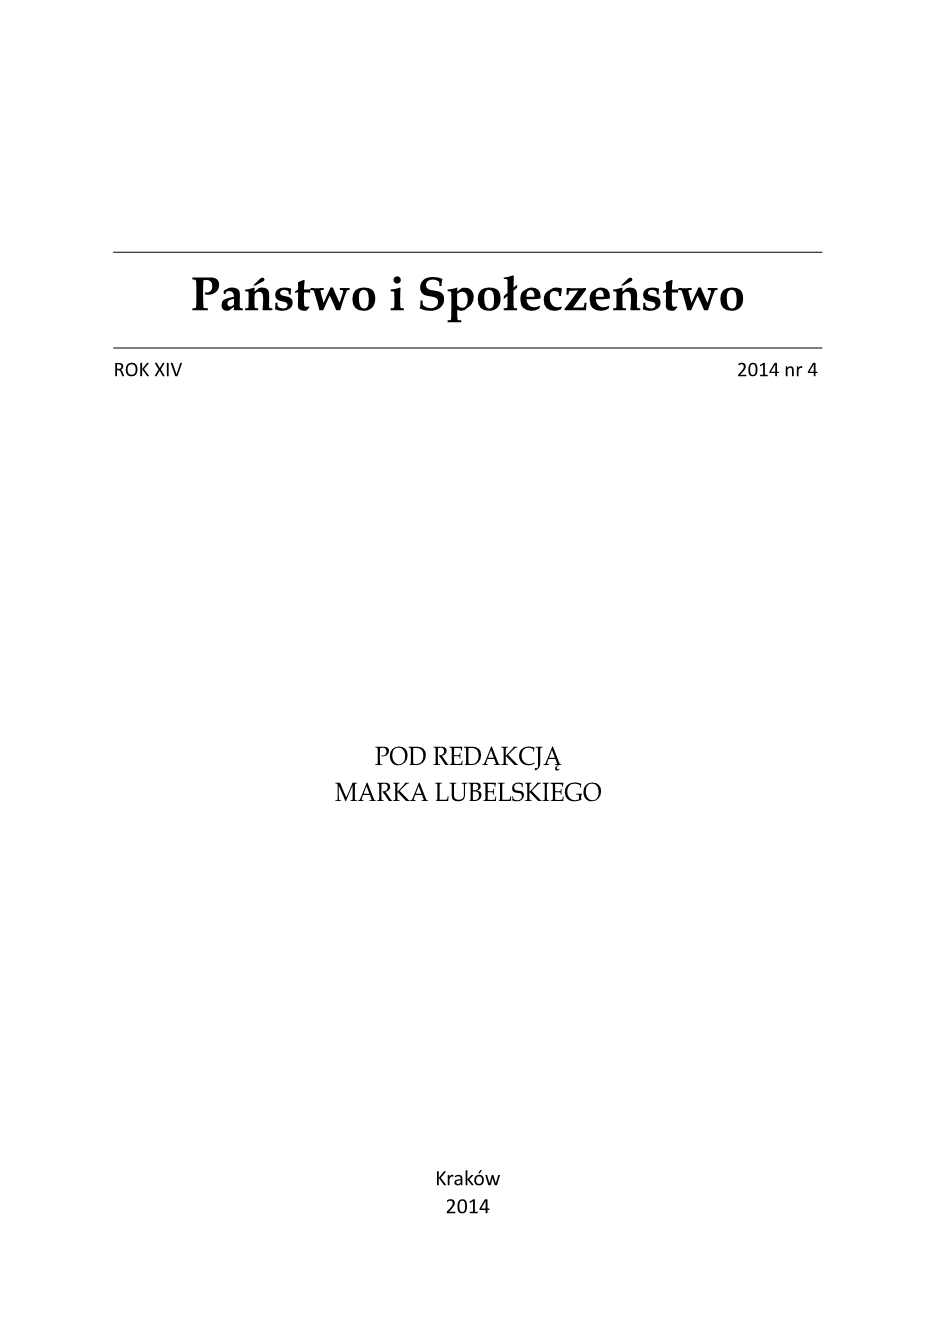 Tomasz Pietrzykowski, Intuicja prawnicza. W stronę zewnętrznej teorii integracji prawa, [Difin, Warszawa 2012, 324 s.]